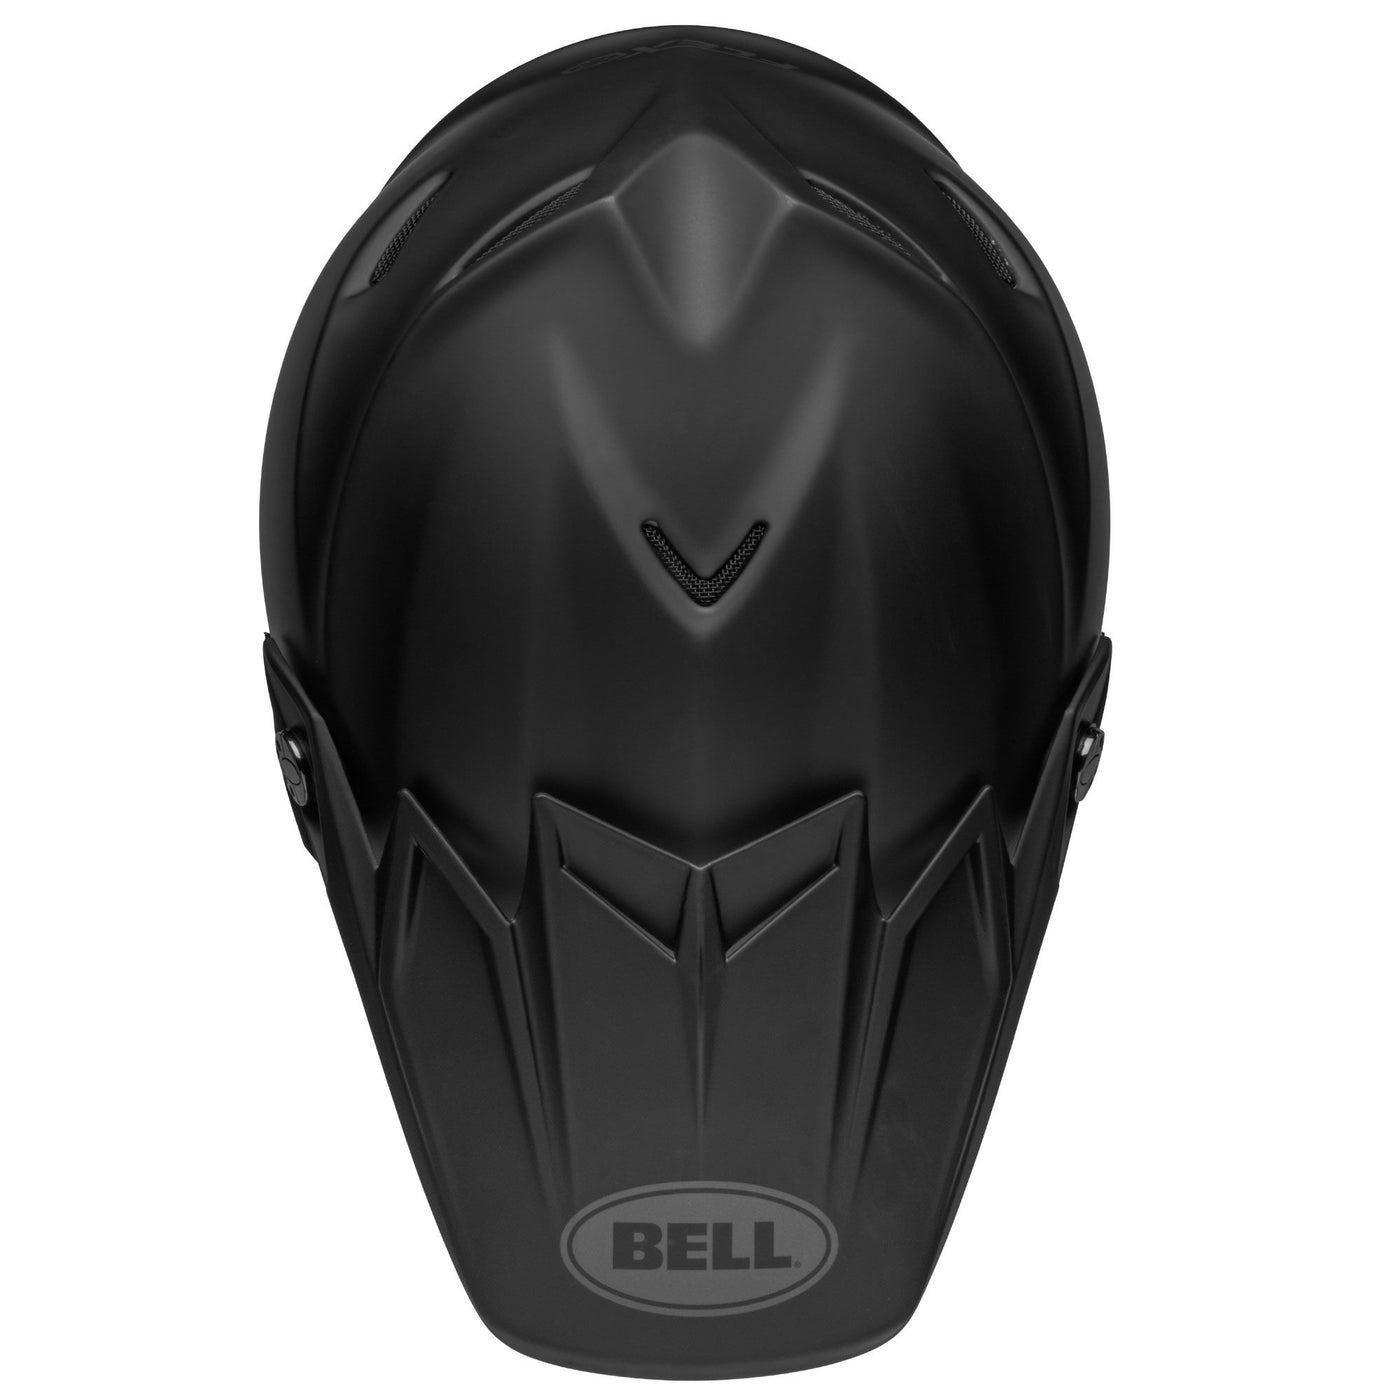 bell moto 9s flex dirt motorcycle helmet matte black top